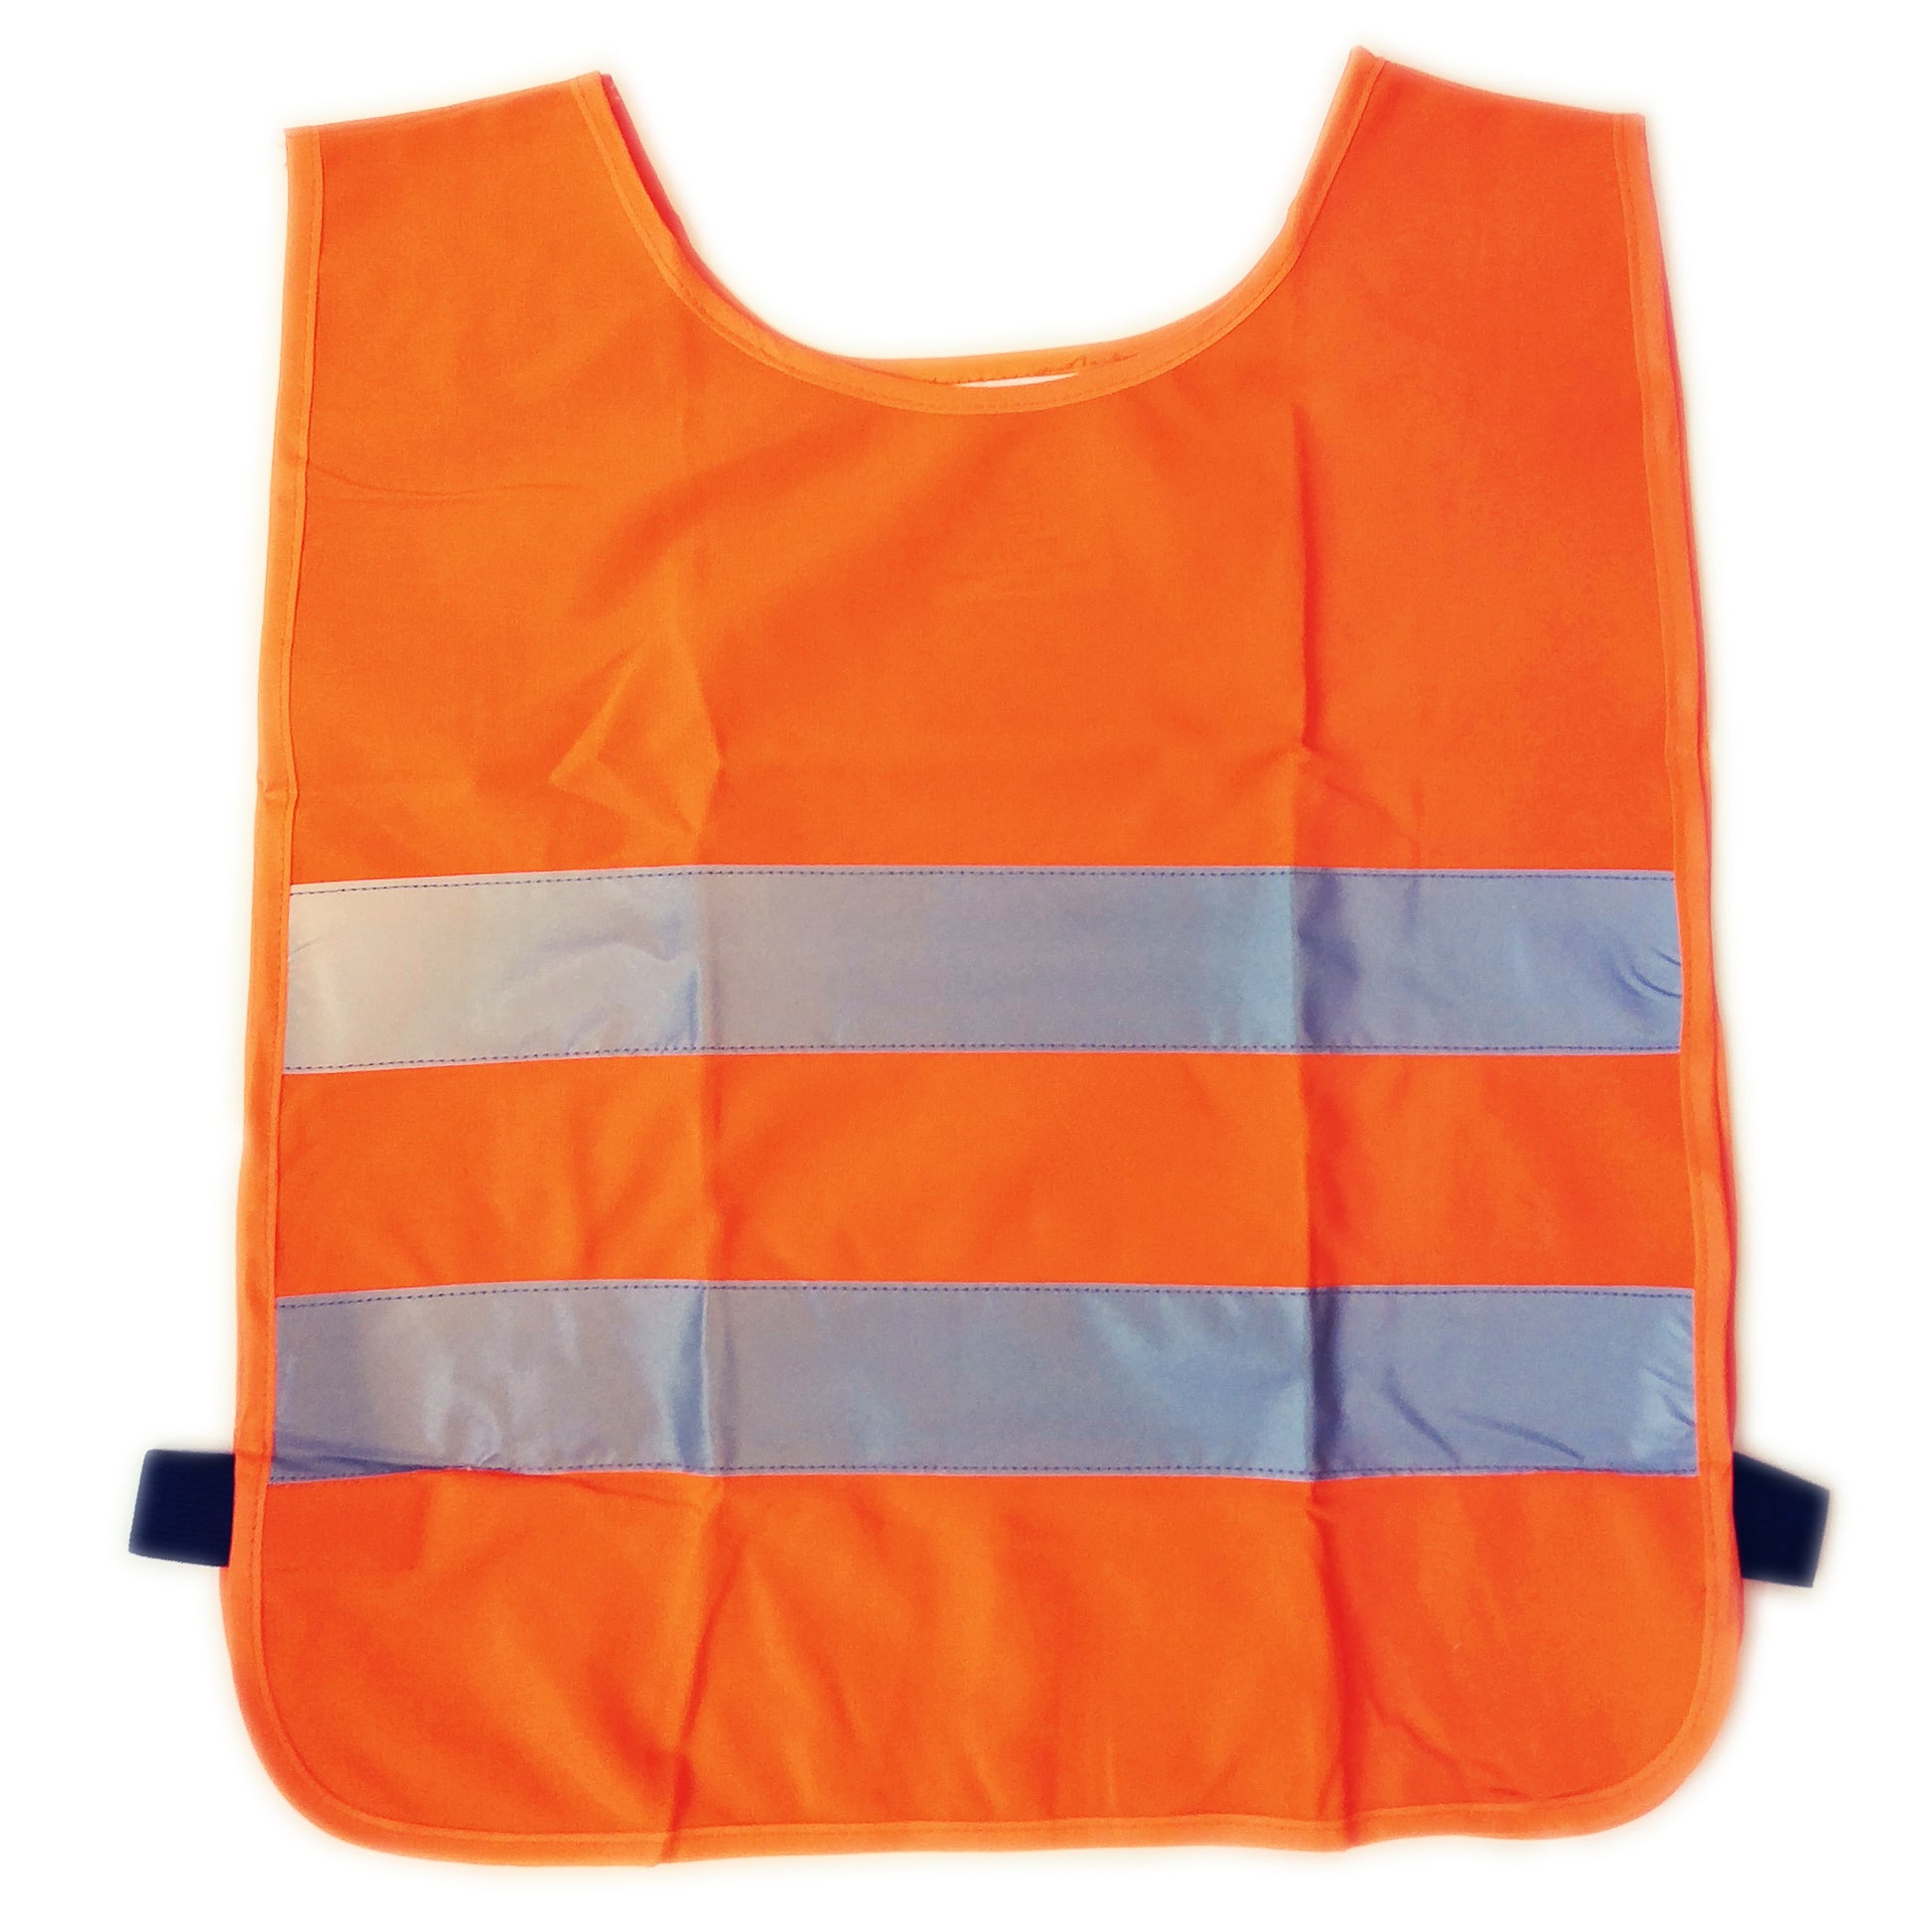 Kinder Sicherheitsweste Warnweste Gelb Orange EN 1150 Reflektorstreifen 